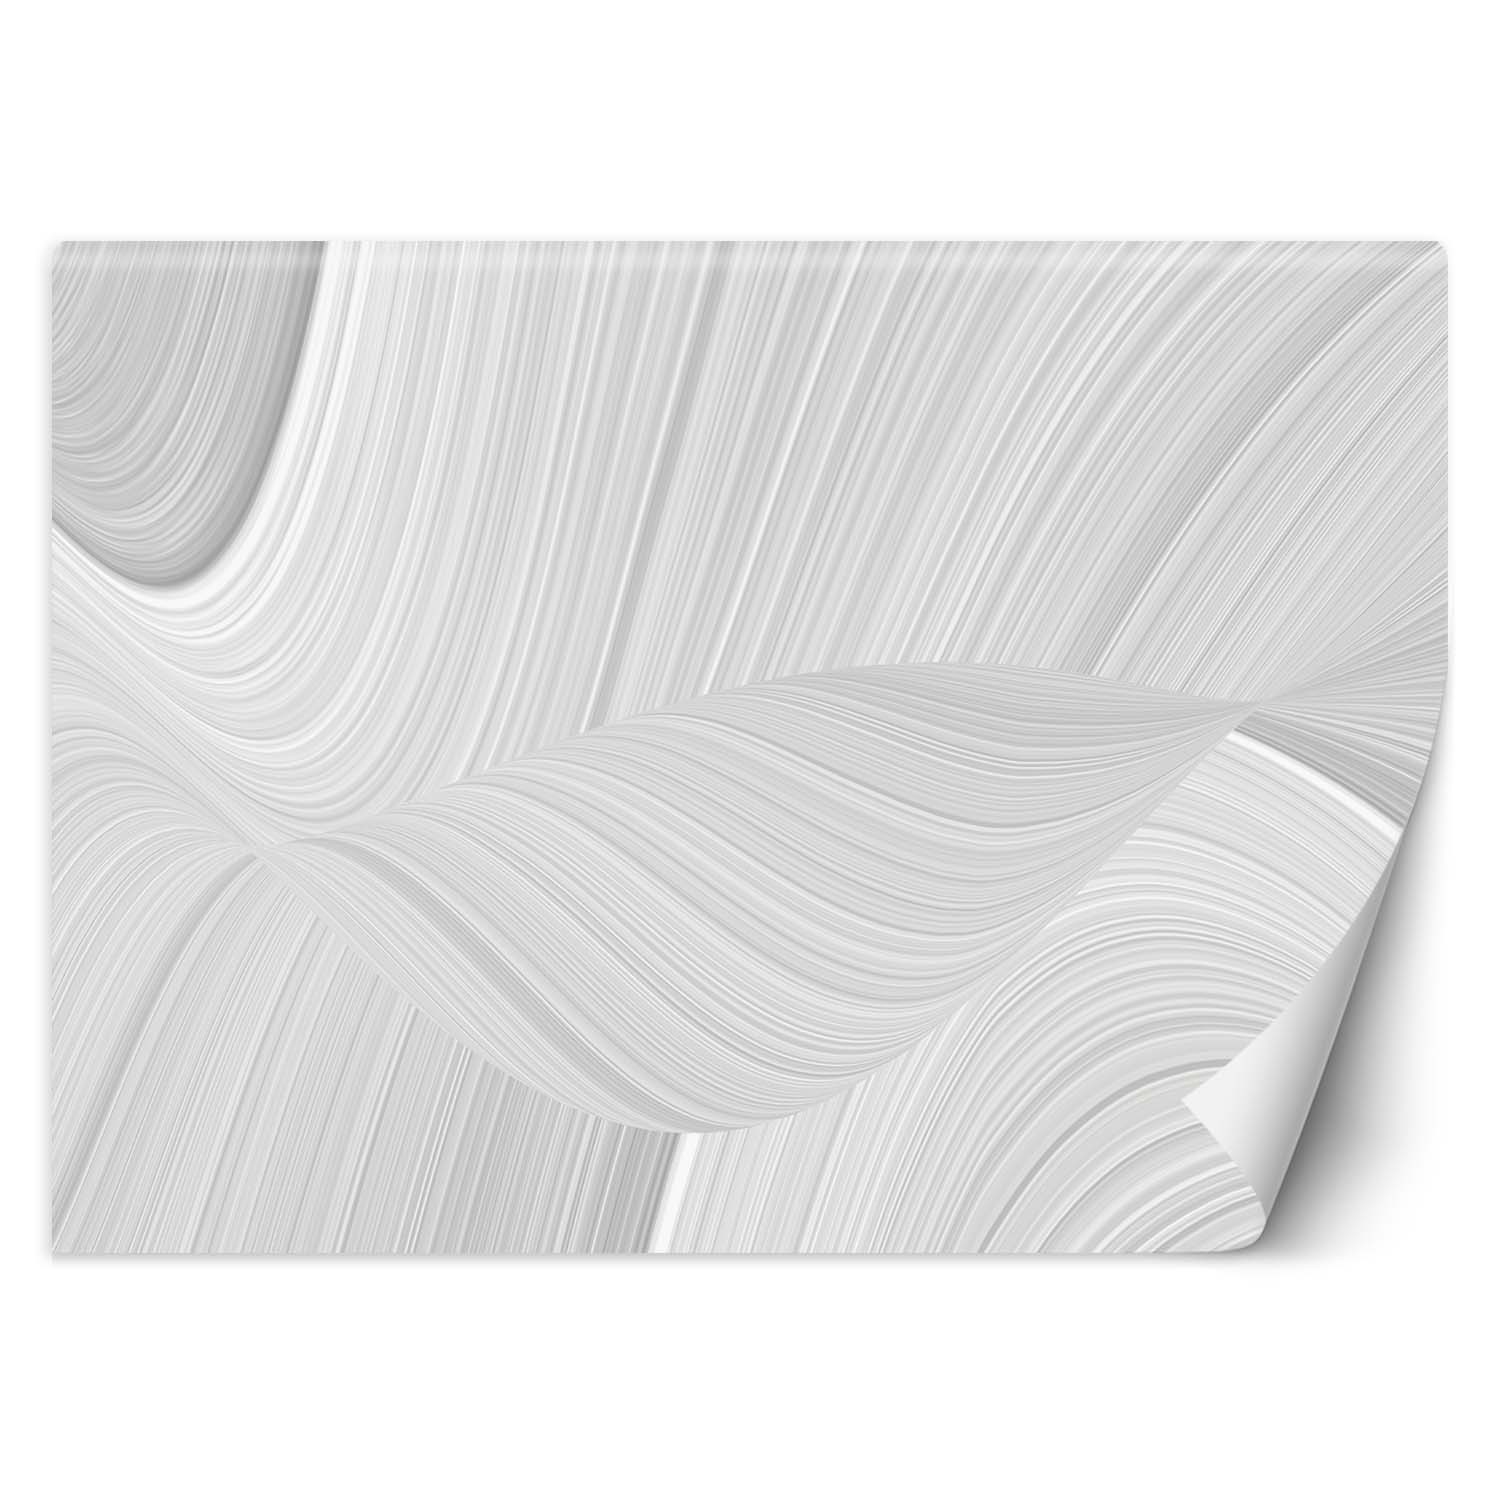 Trend24 – Behang – Texture Blur – Vliesbehang – Fotobehang 3D – Behang Woonkamer – 400x280x2 cm – Incl. behanglijm